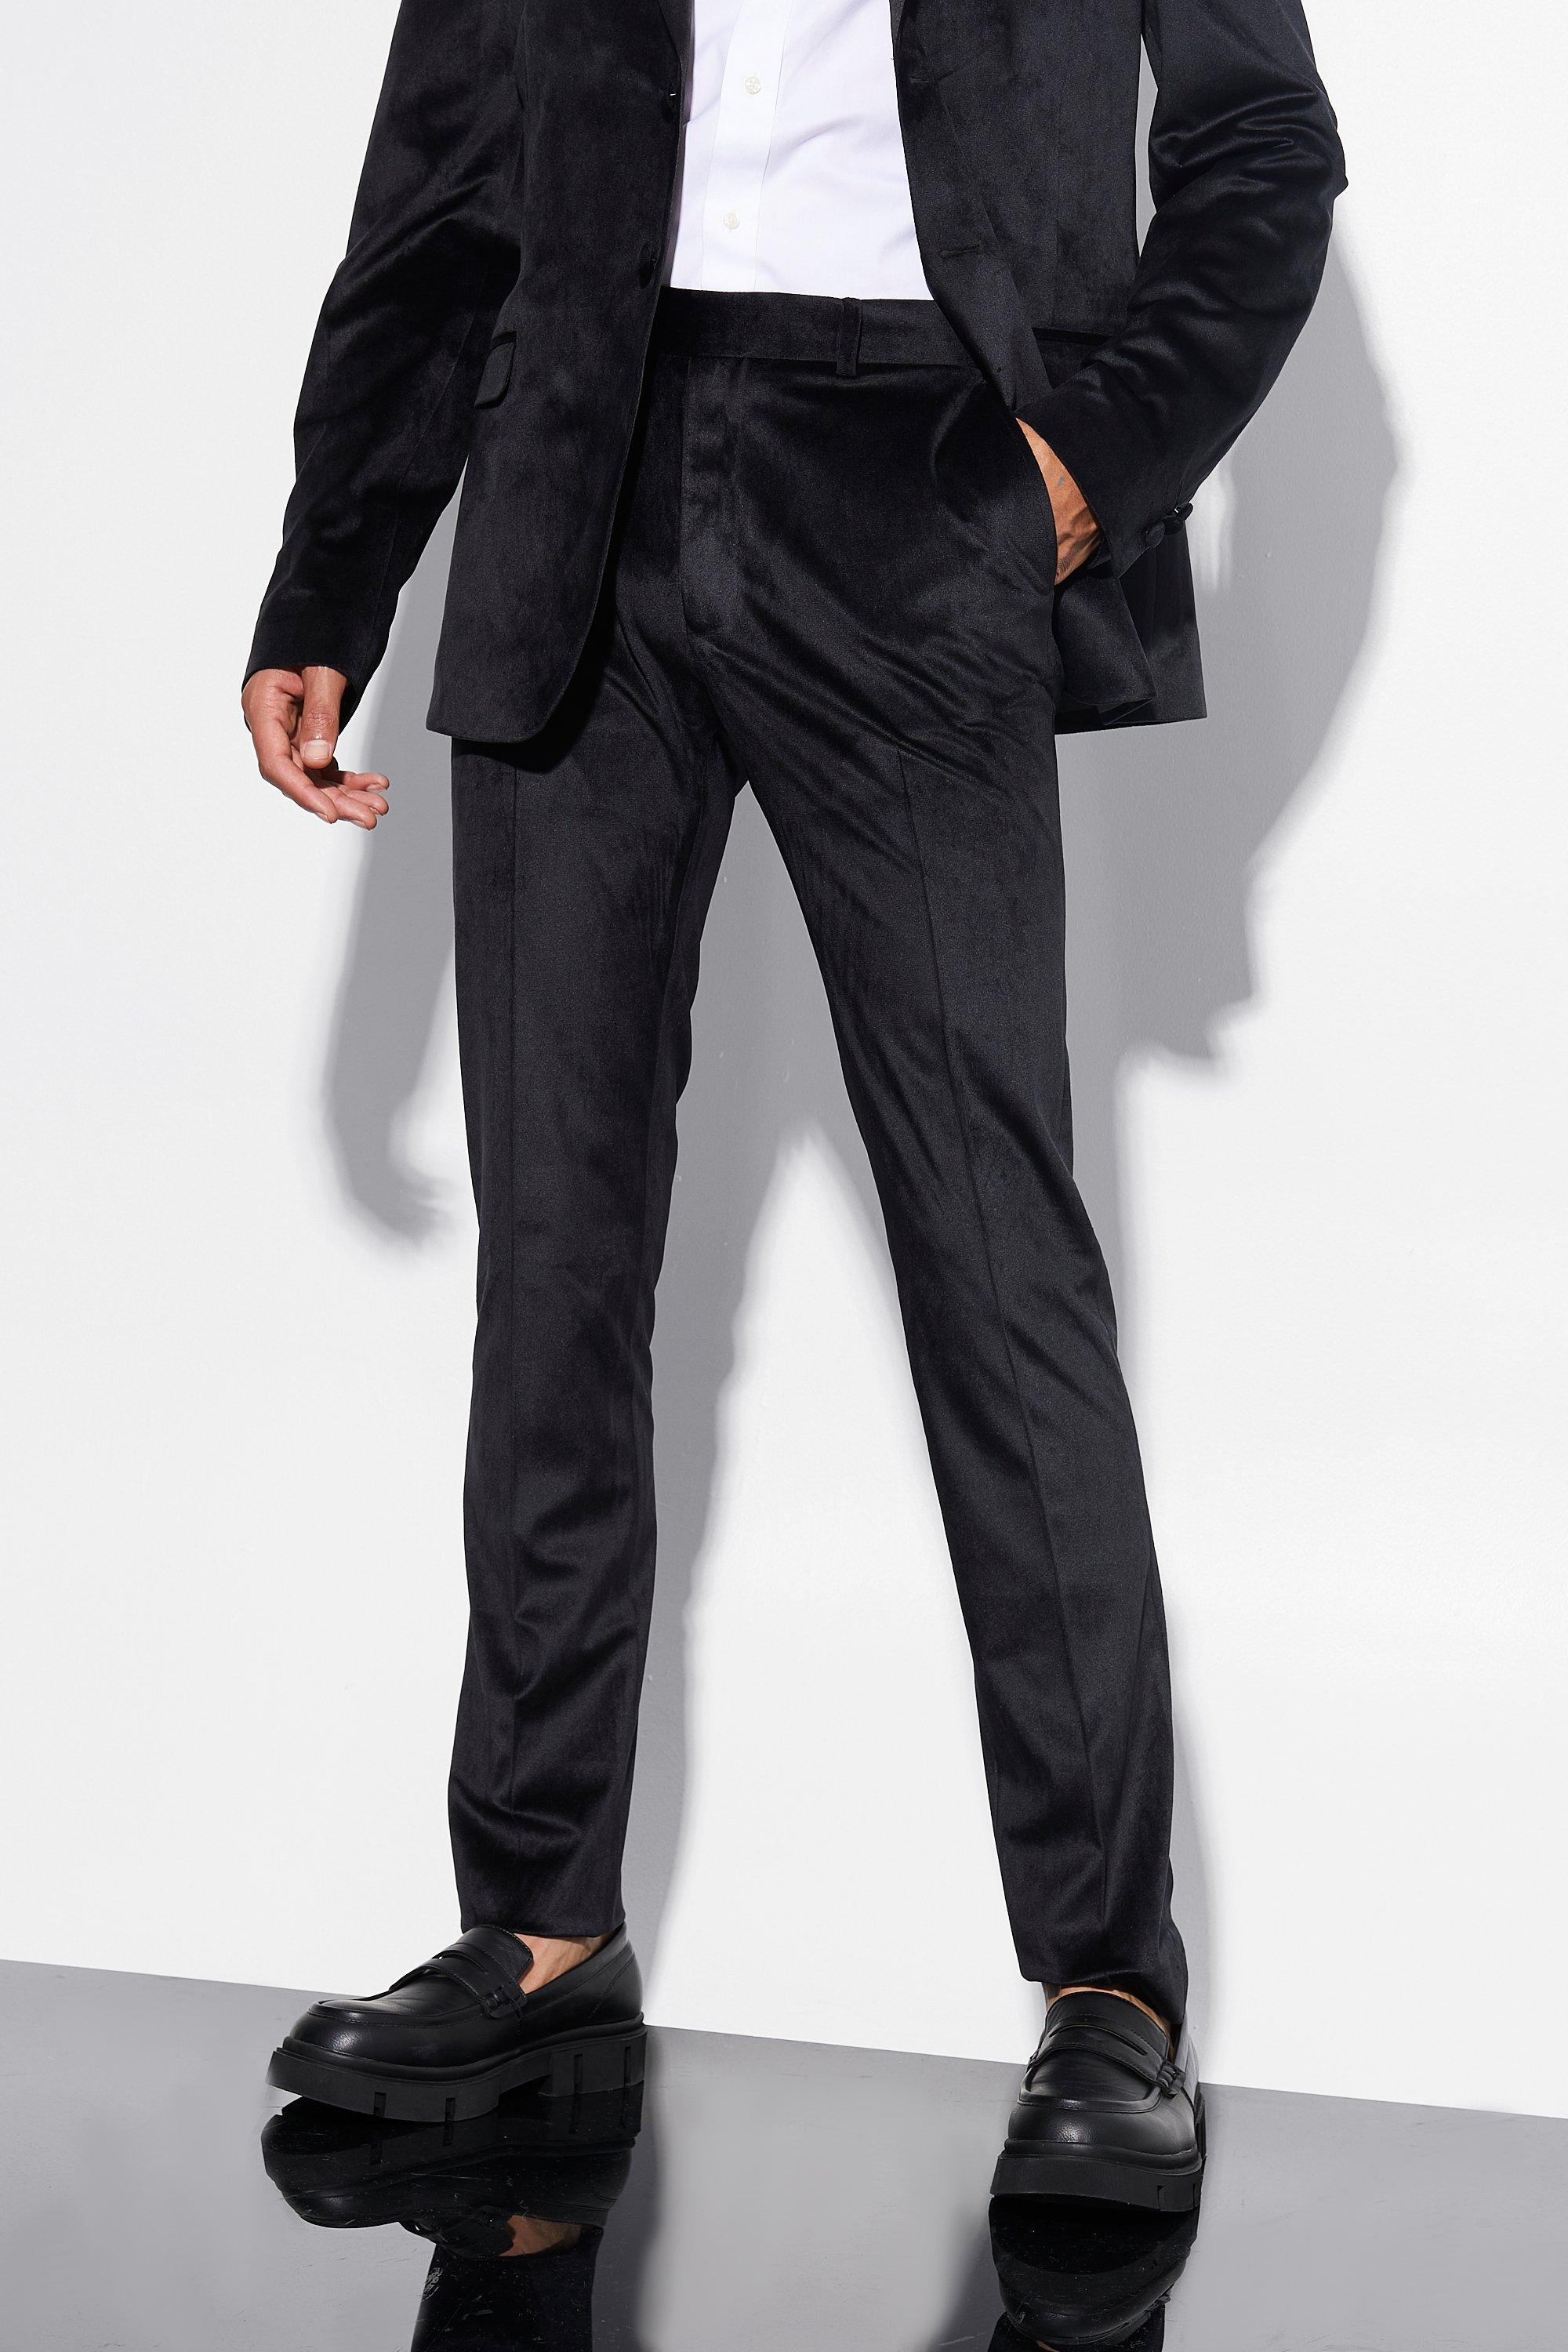 tall - pantalon de costume skinny en velours homme - noir - 30, noir